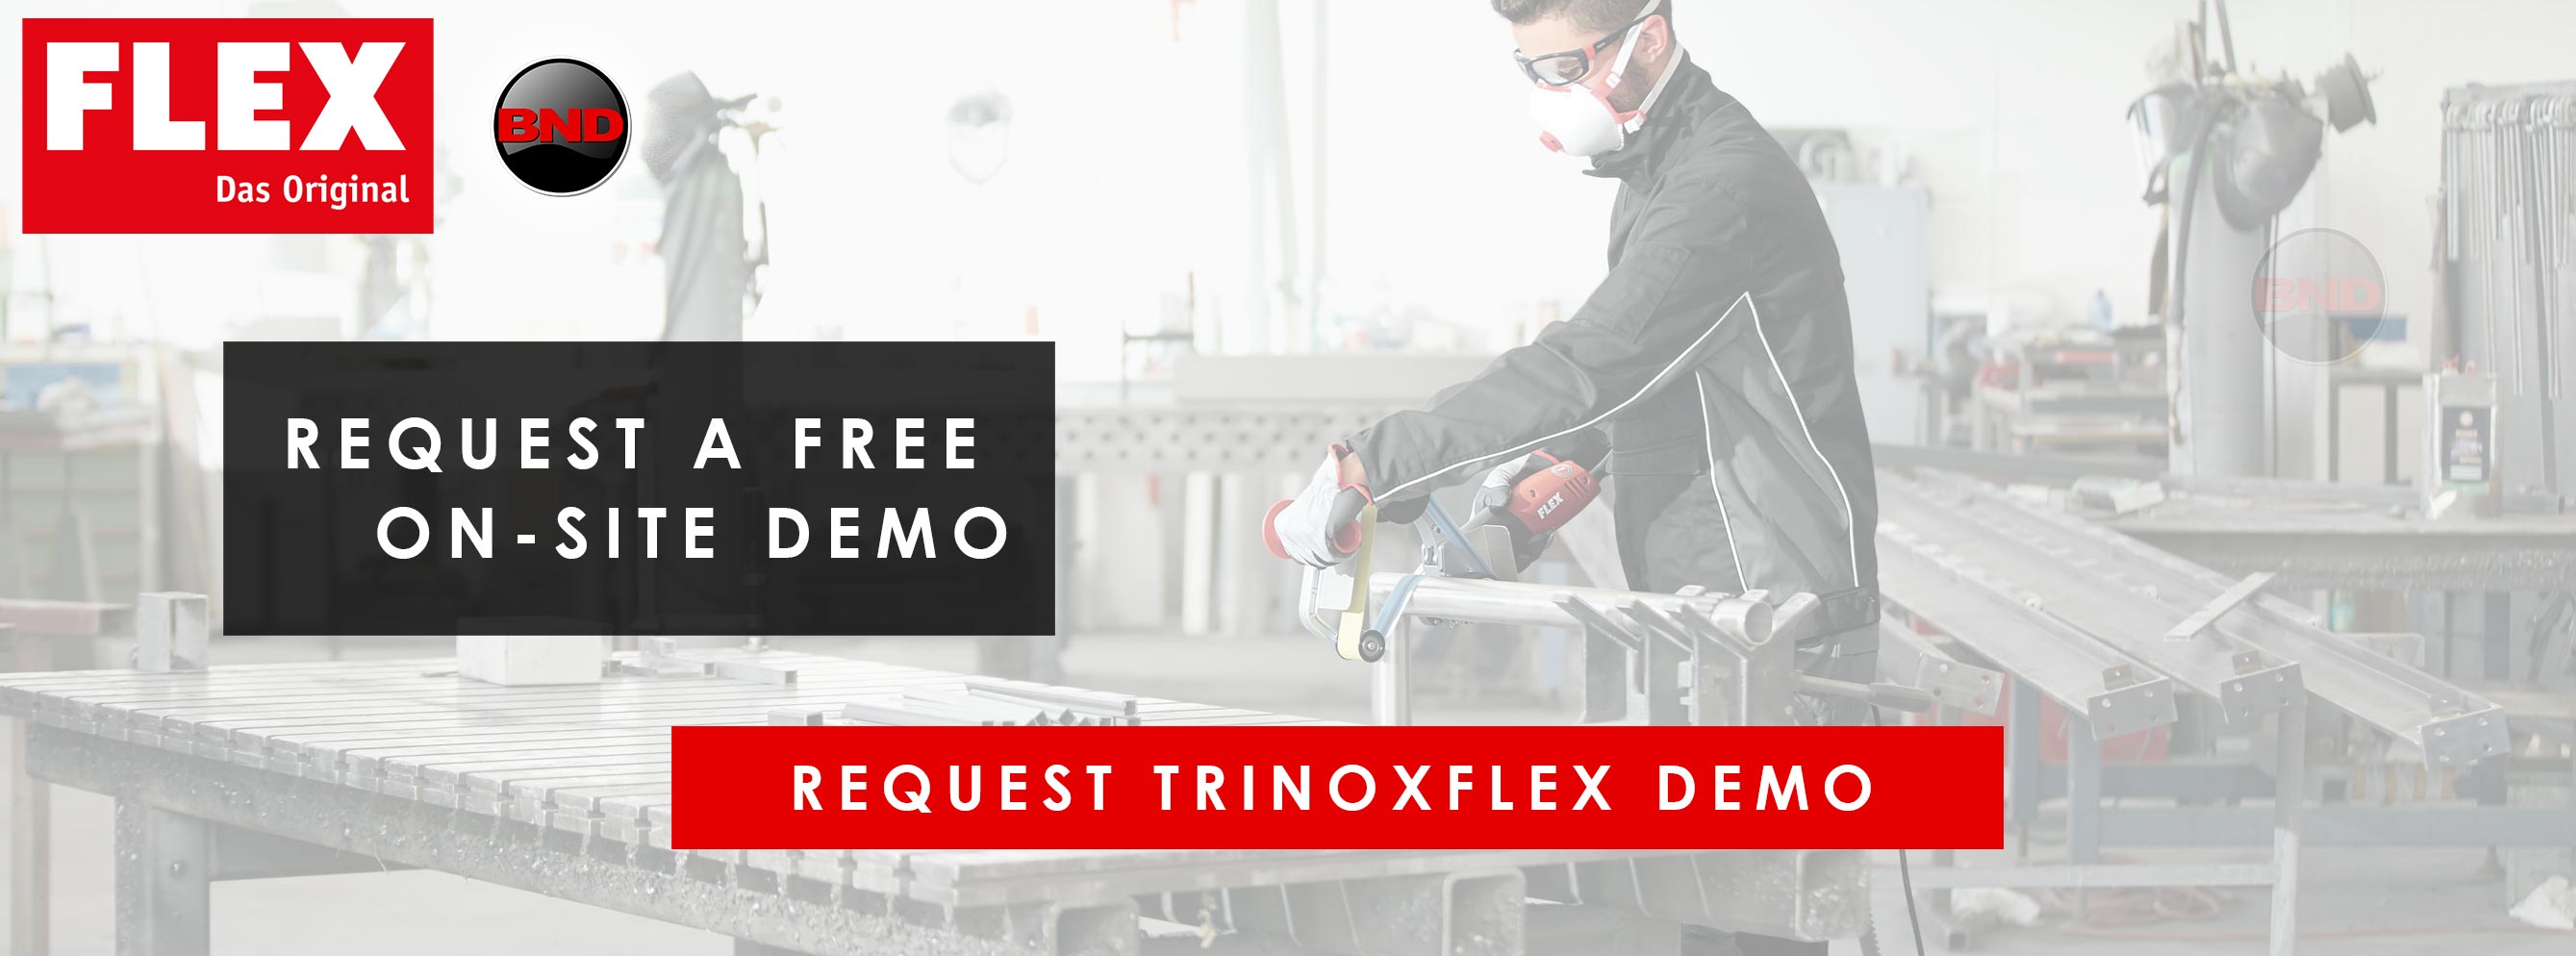 Flex Trinoxflex Demo